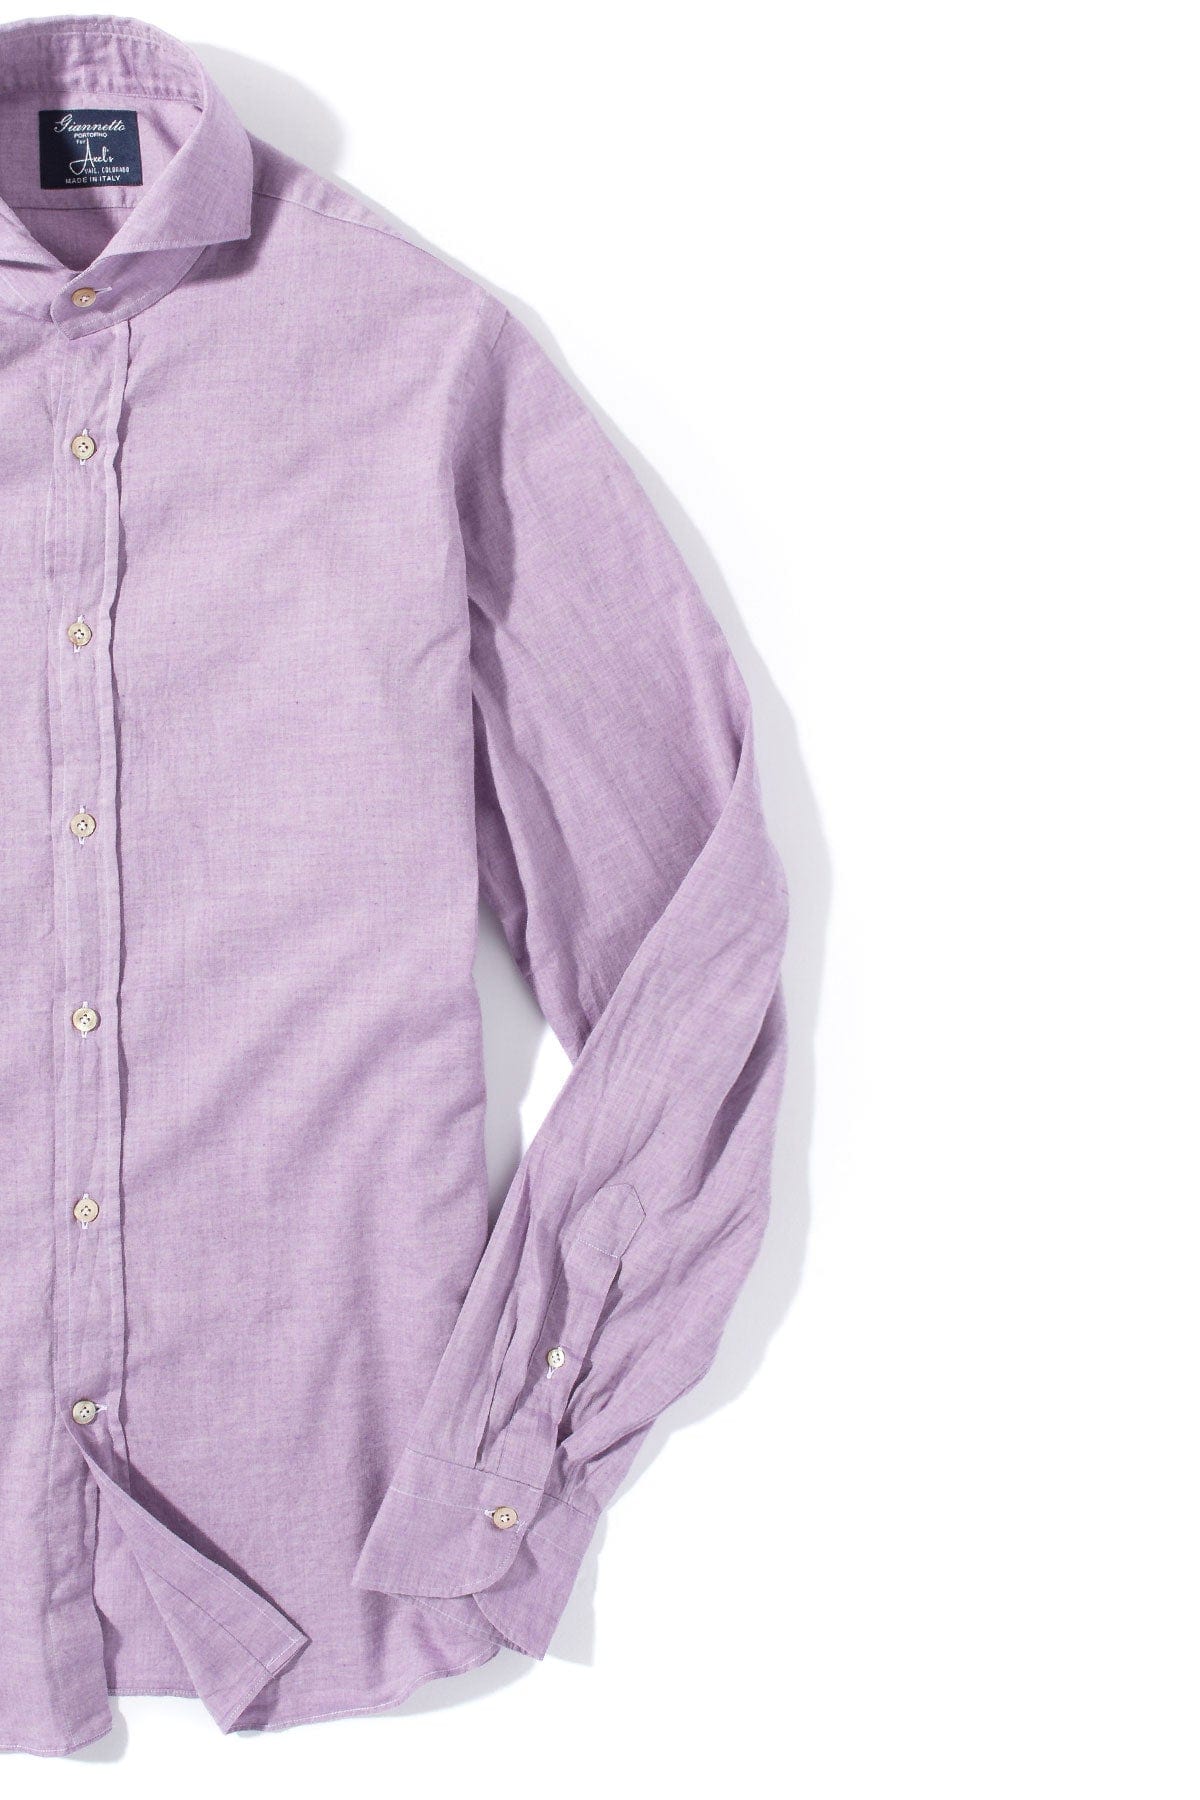 Diablo Cotton Shirt in Purple - AXEL'S